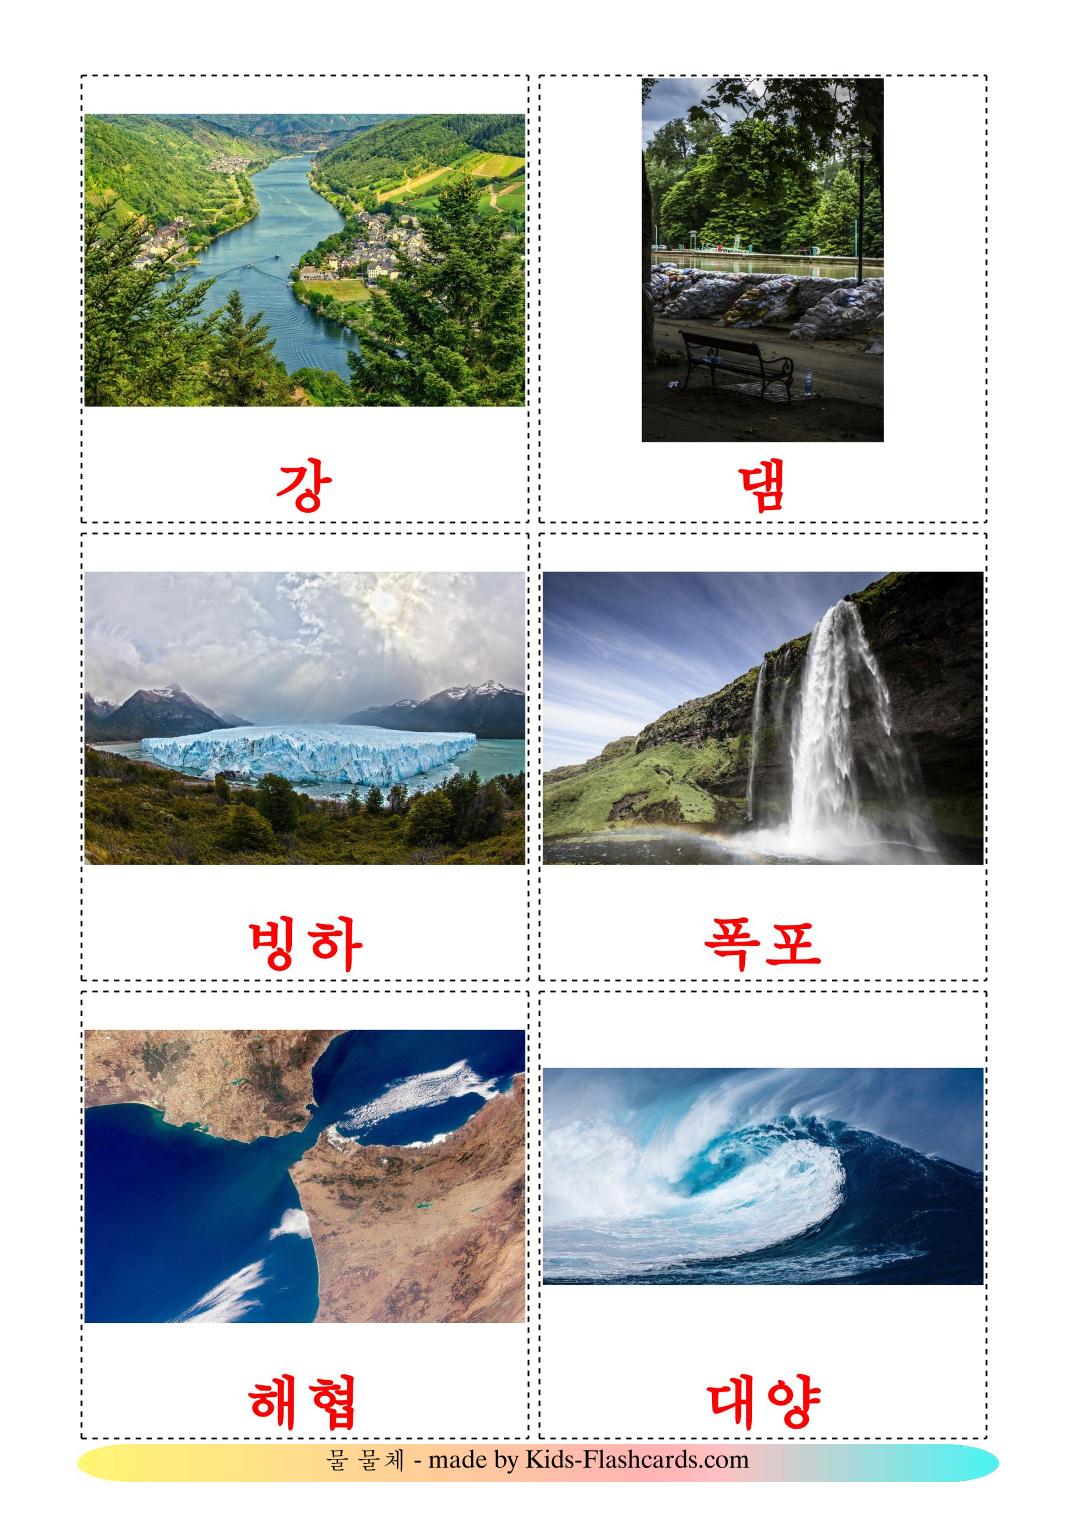 Corpos de água - 30 Flashcards coreanoes gratuitos para impressão